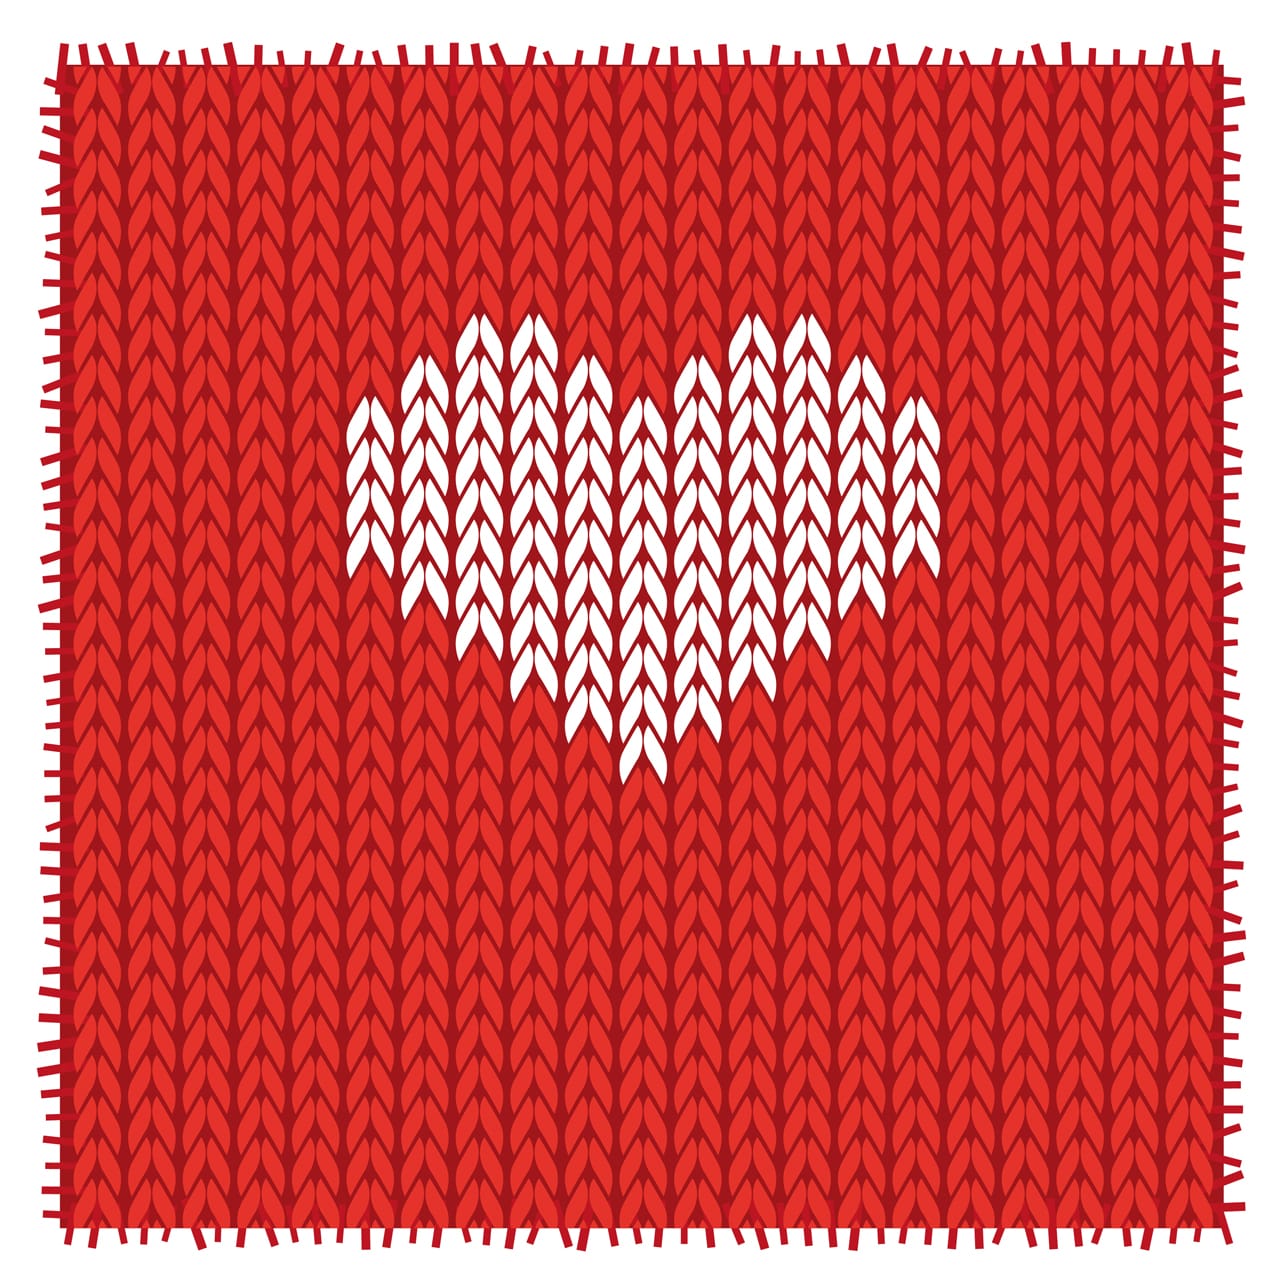 Hat winter wear heart warm love knitting pattern christmas